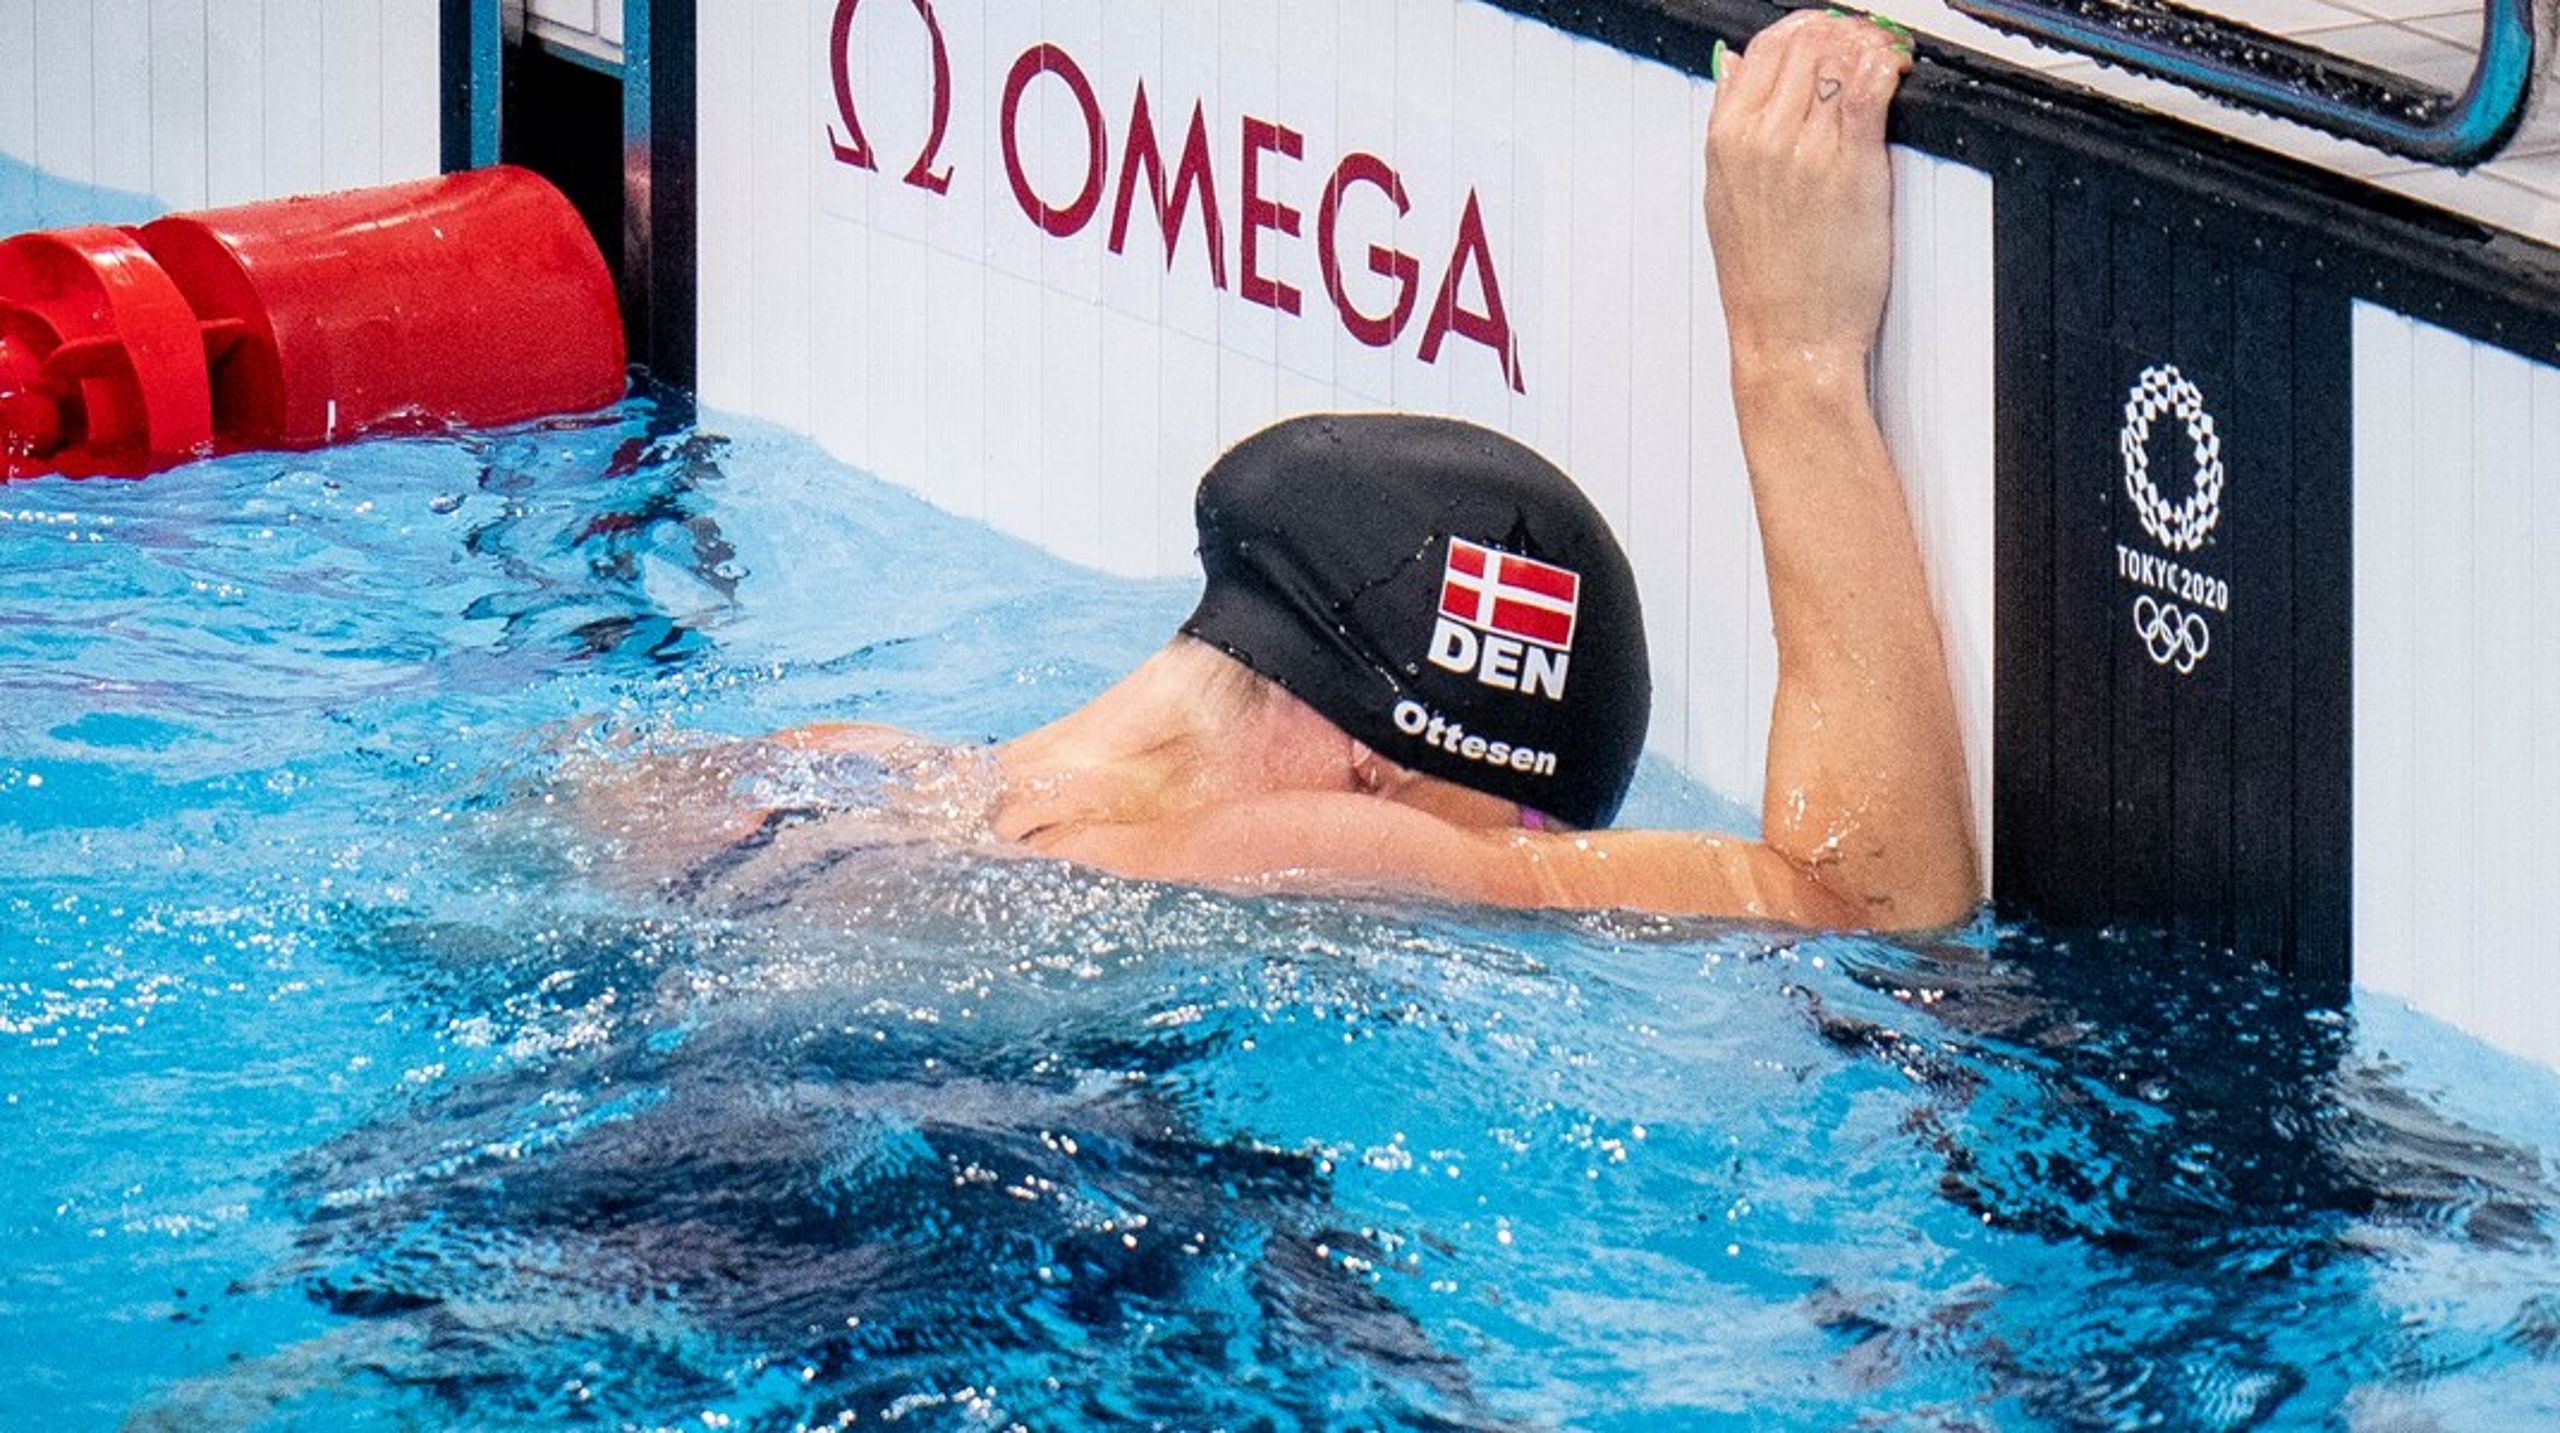 Dansk svømning har været præget af intern uro, men det er også et oprør i gang i europæiske svømmepolitik. Det kan bane vej for en international toppost til Dansk Svømmeunions formand.